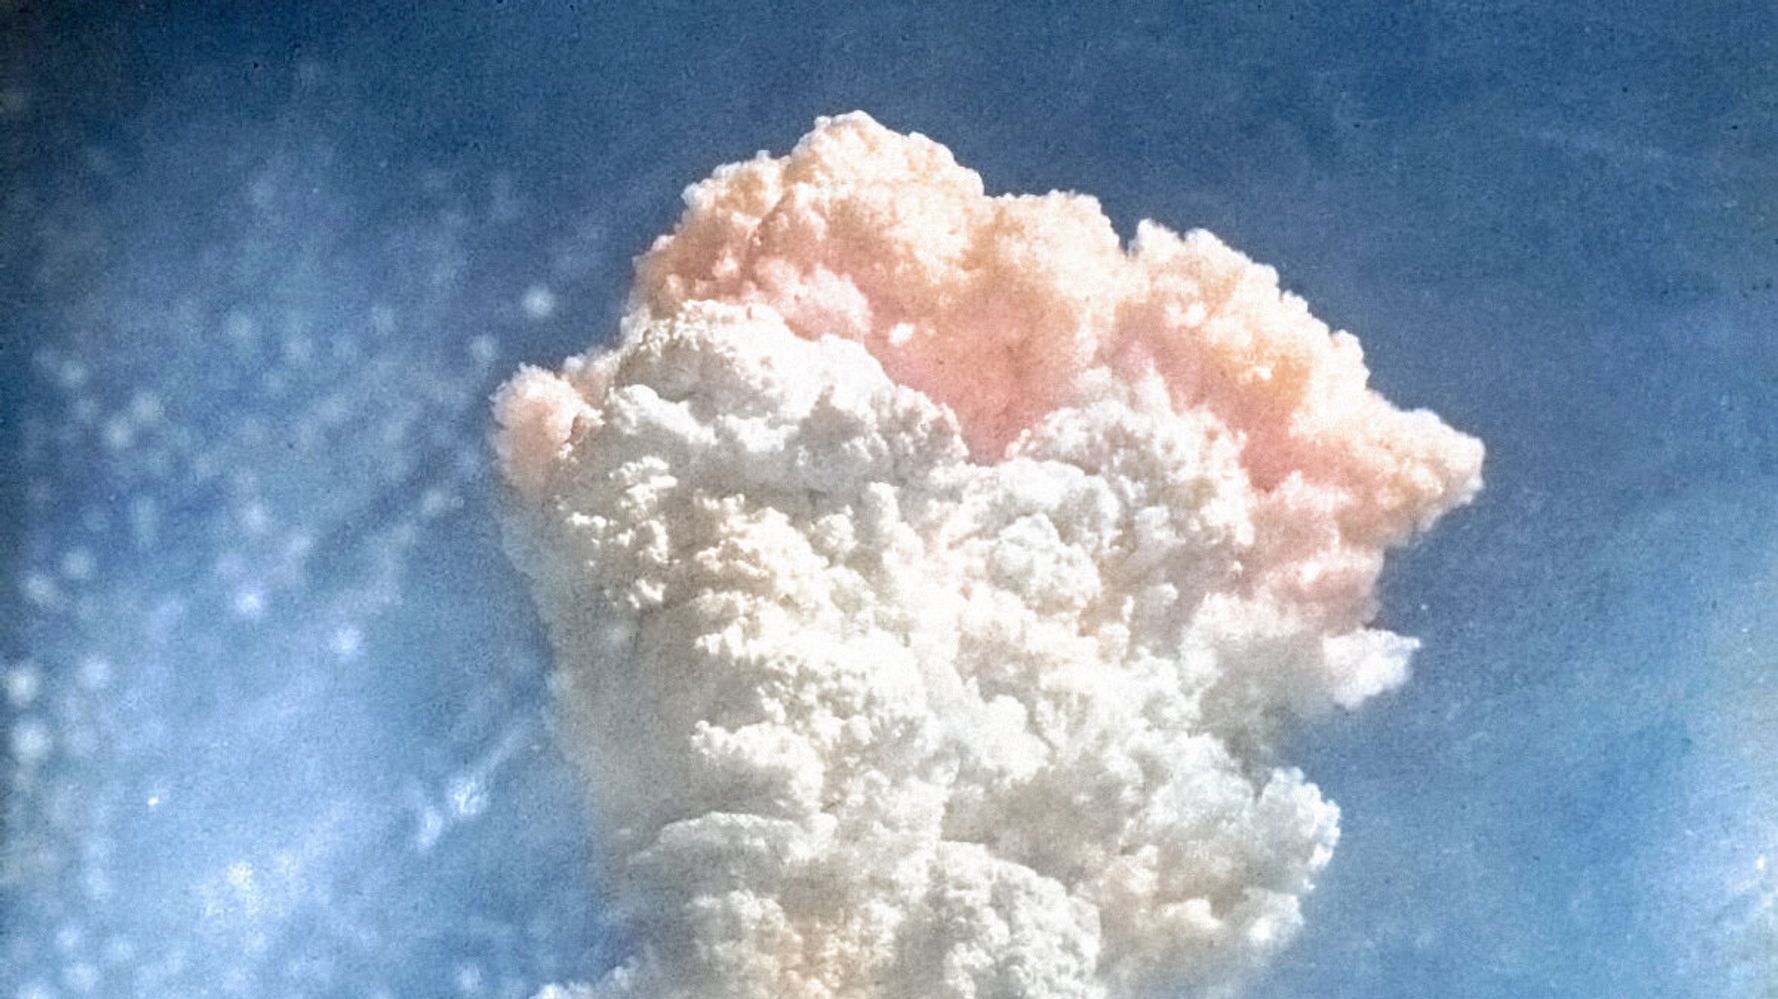 広島原爆投下から75年 Aiでカラー化された赤いキノコ雲の写真に胸が締め付けられる ハフポスト